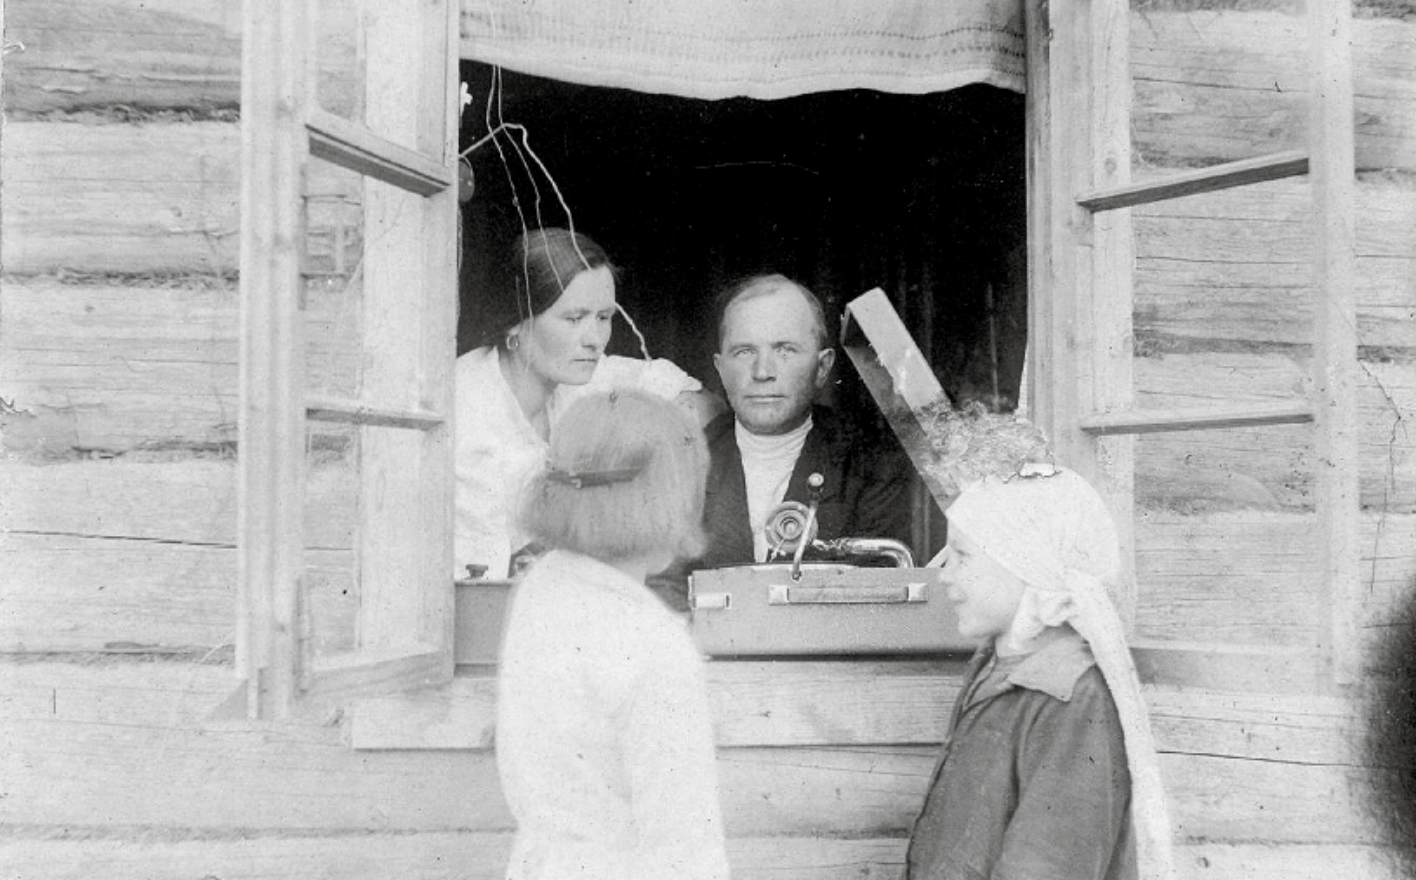 Schwarz-Weiß-Fotografie von Lewschenkow, er selbst blickt aus dem Fenster, vor ihm steht ein Grammophon